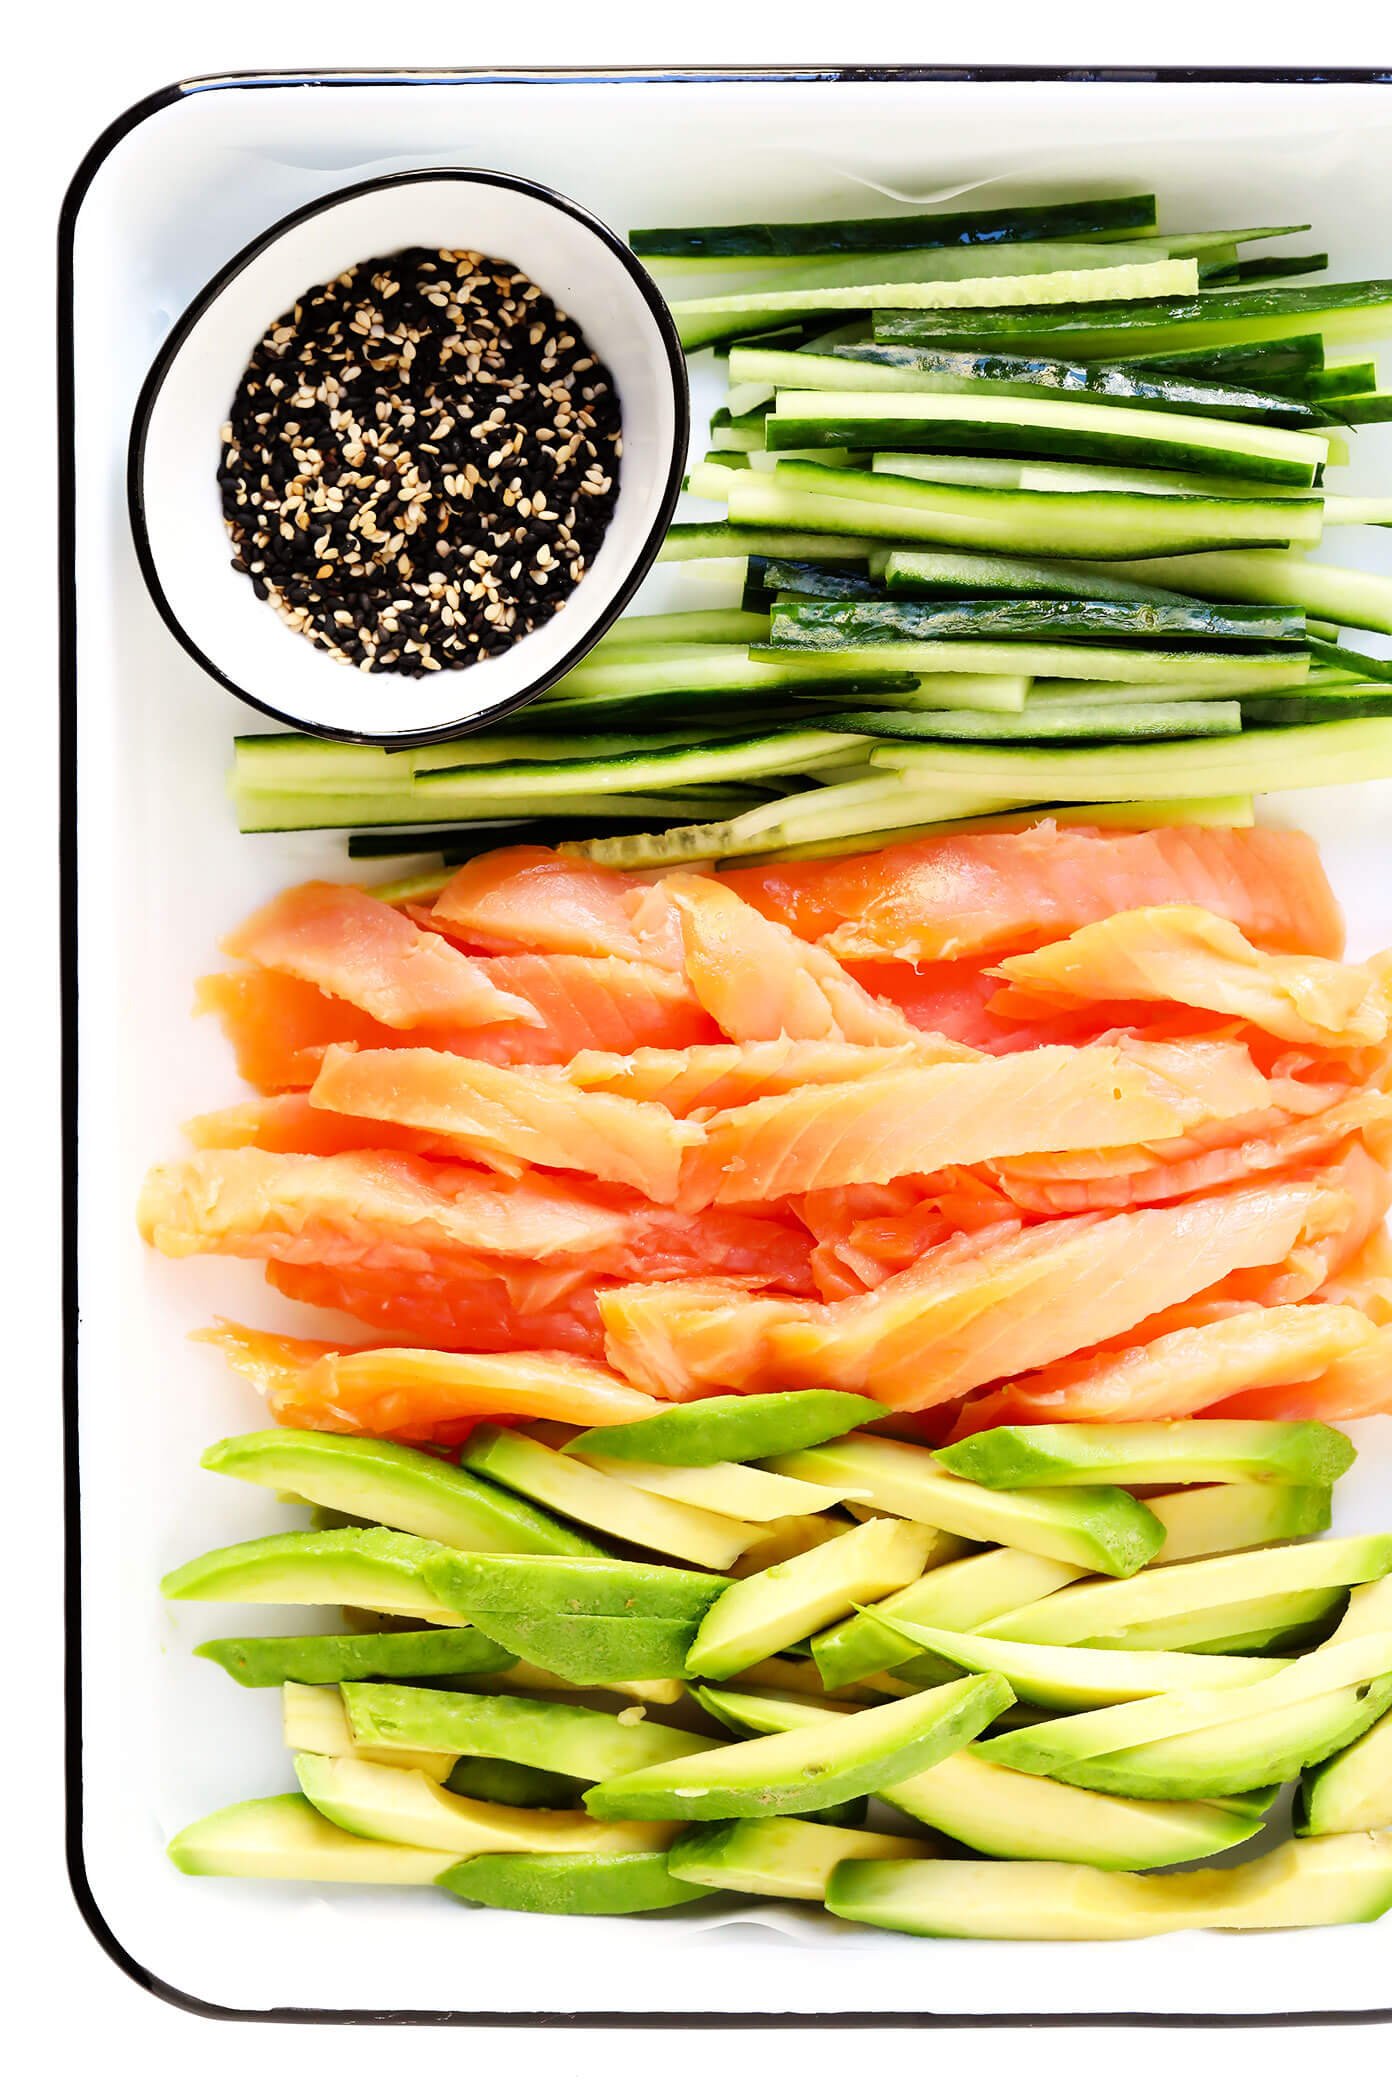 Sushi Roll Ingredients -- Cucumber, Smoked Salmon, Avocado, Sesame Seeds